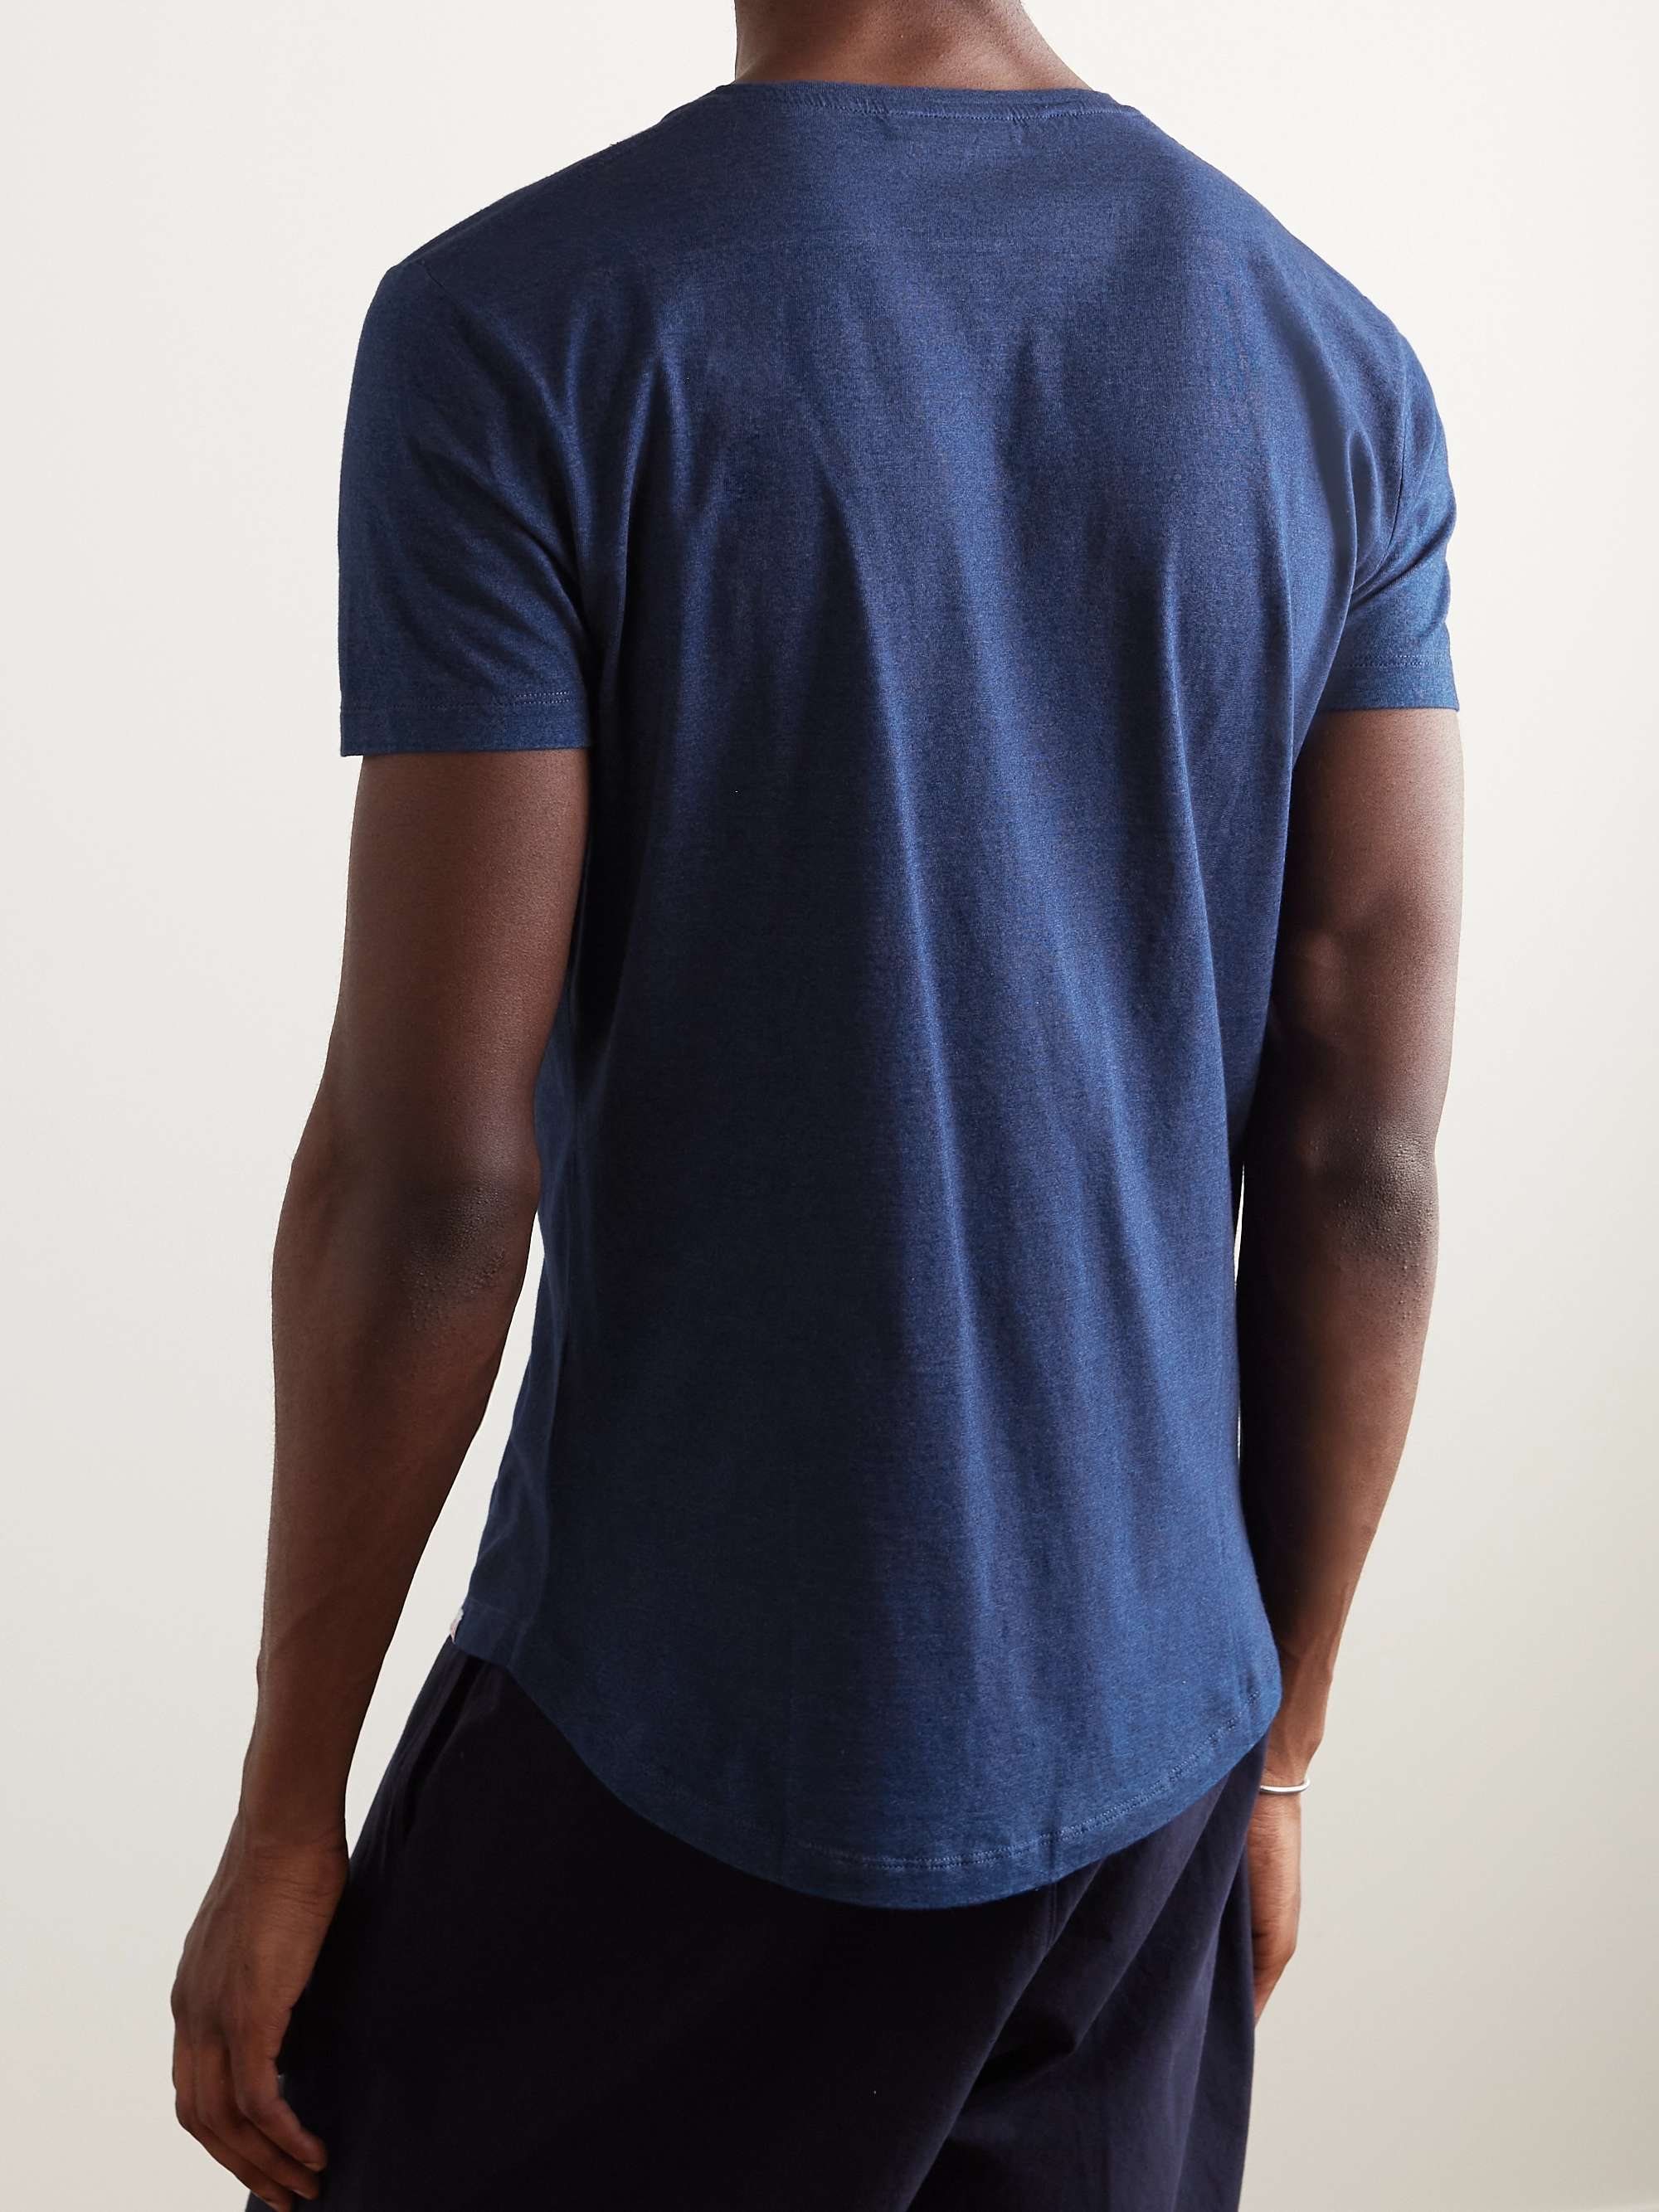 ORLEBAR BROWN OB-V Slim-Fit Cotton-Jersey T-Shirt